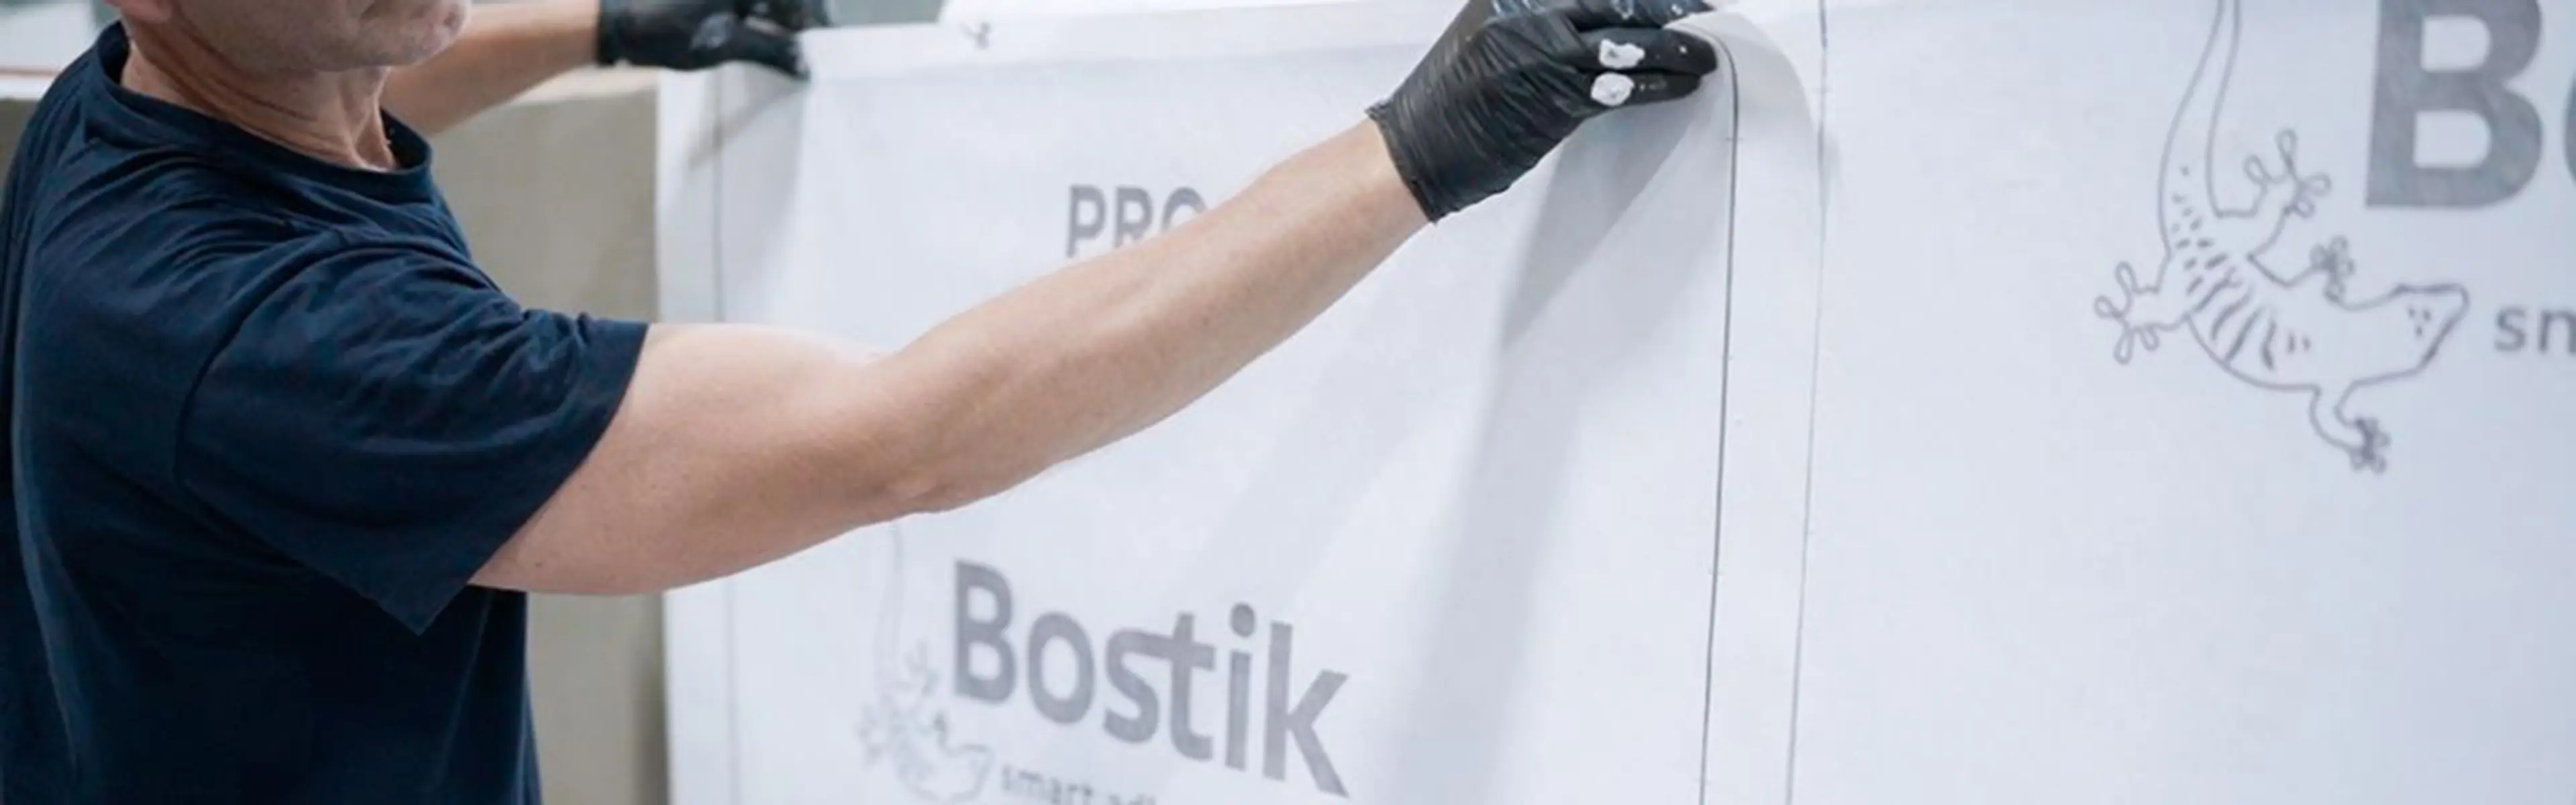 Bostik PRO vanntettingssystem som festes til vegg av mann med hansker.